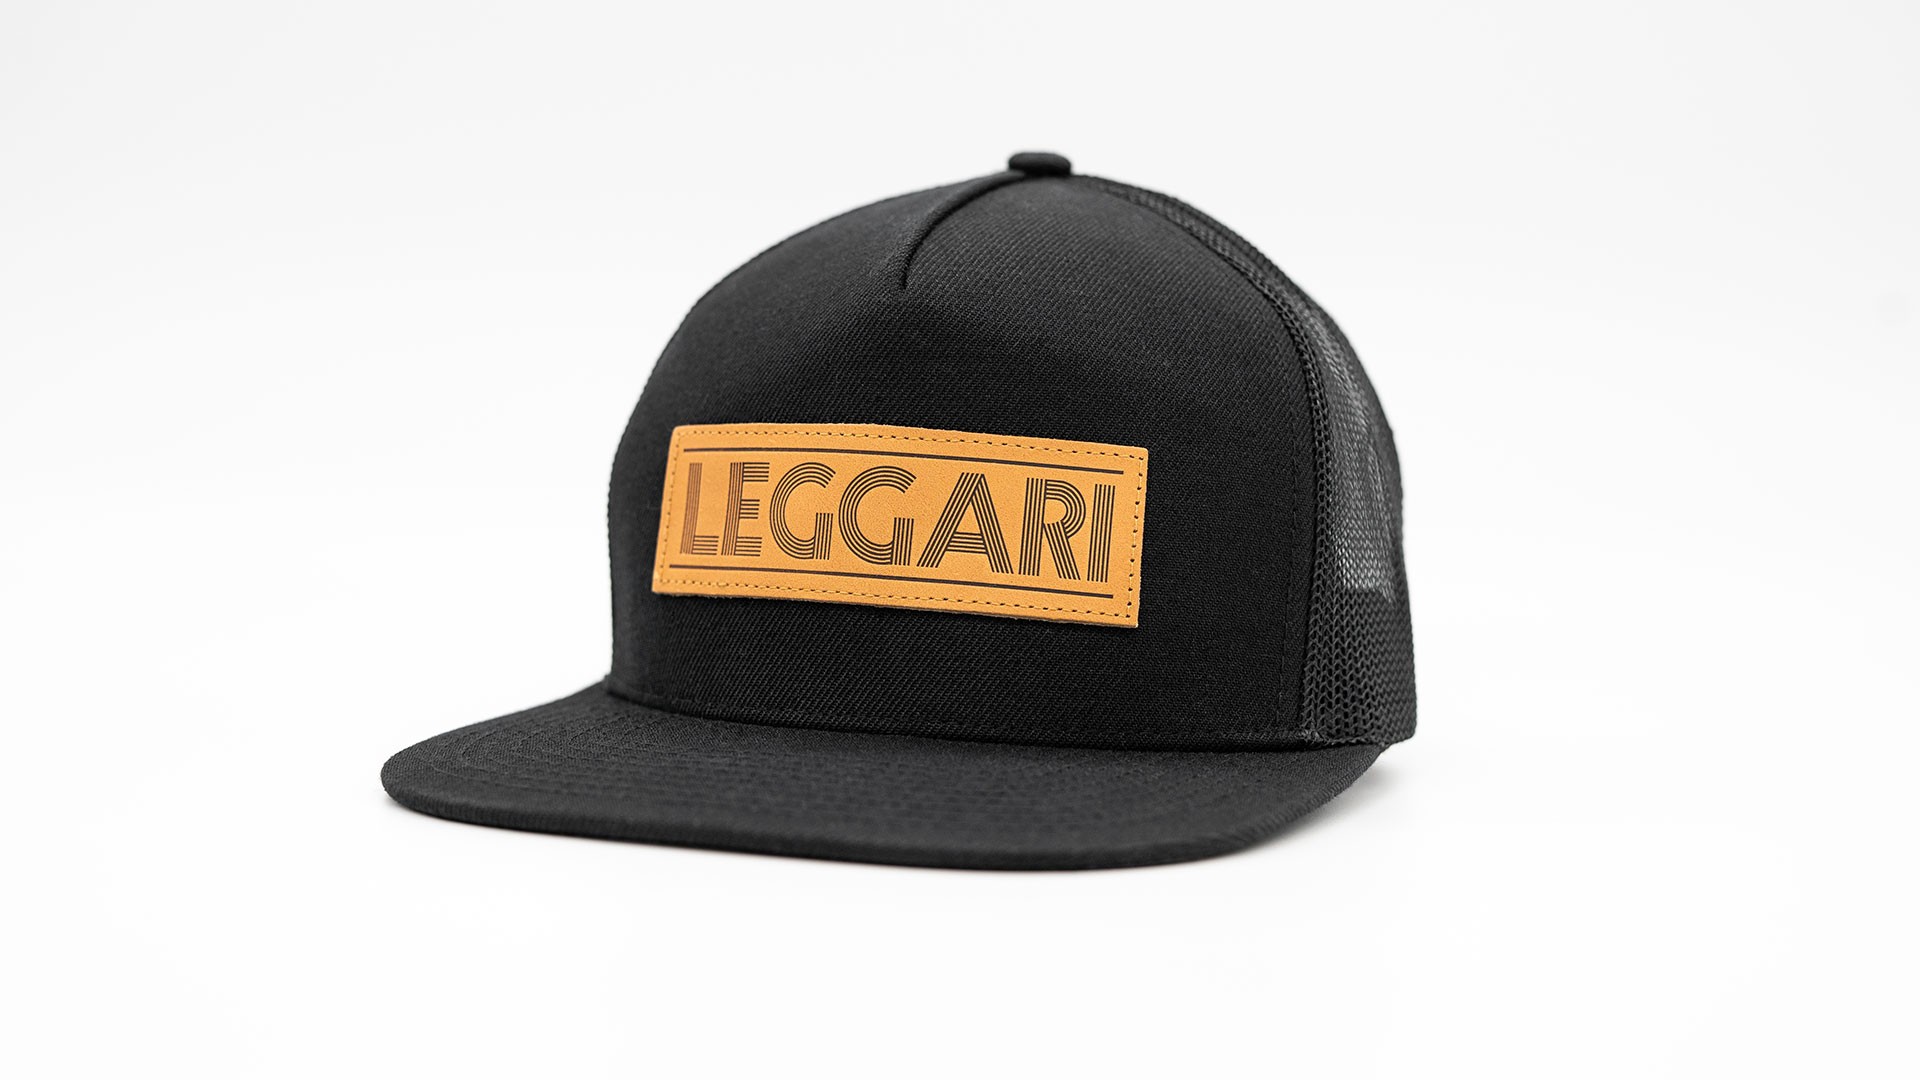 leggari leather flat